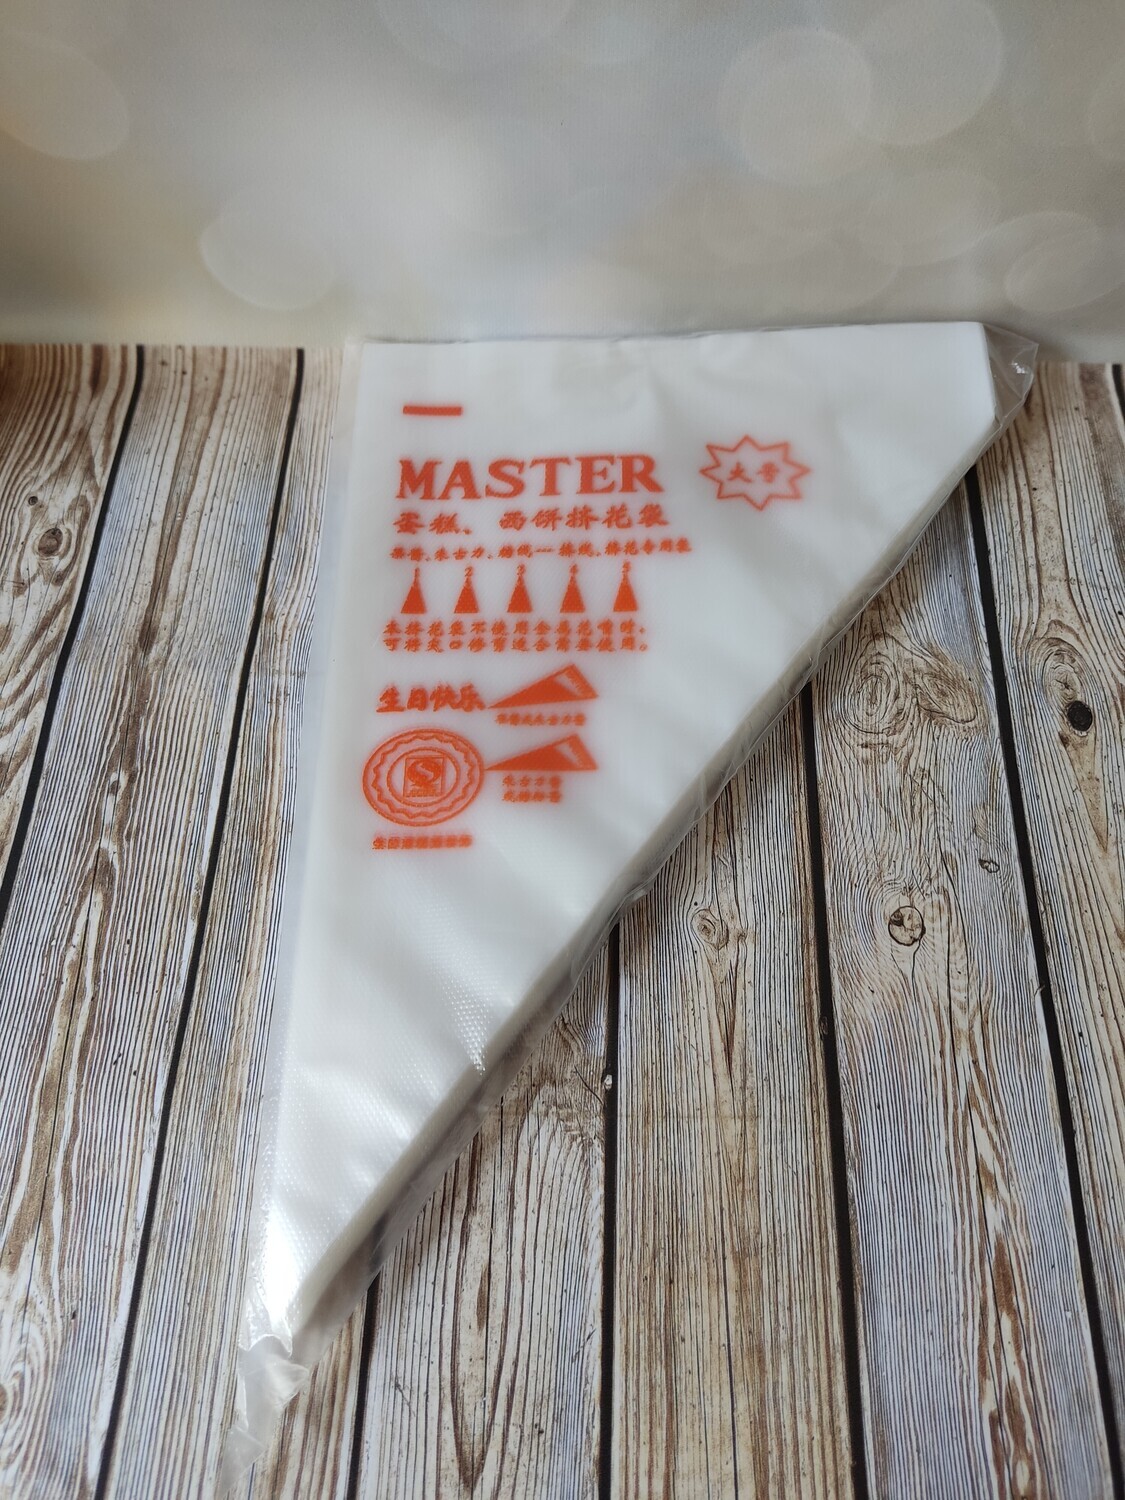 Мешки кондитерские "L" Master 100шт, 36см полиэтилен (Китай)